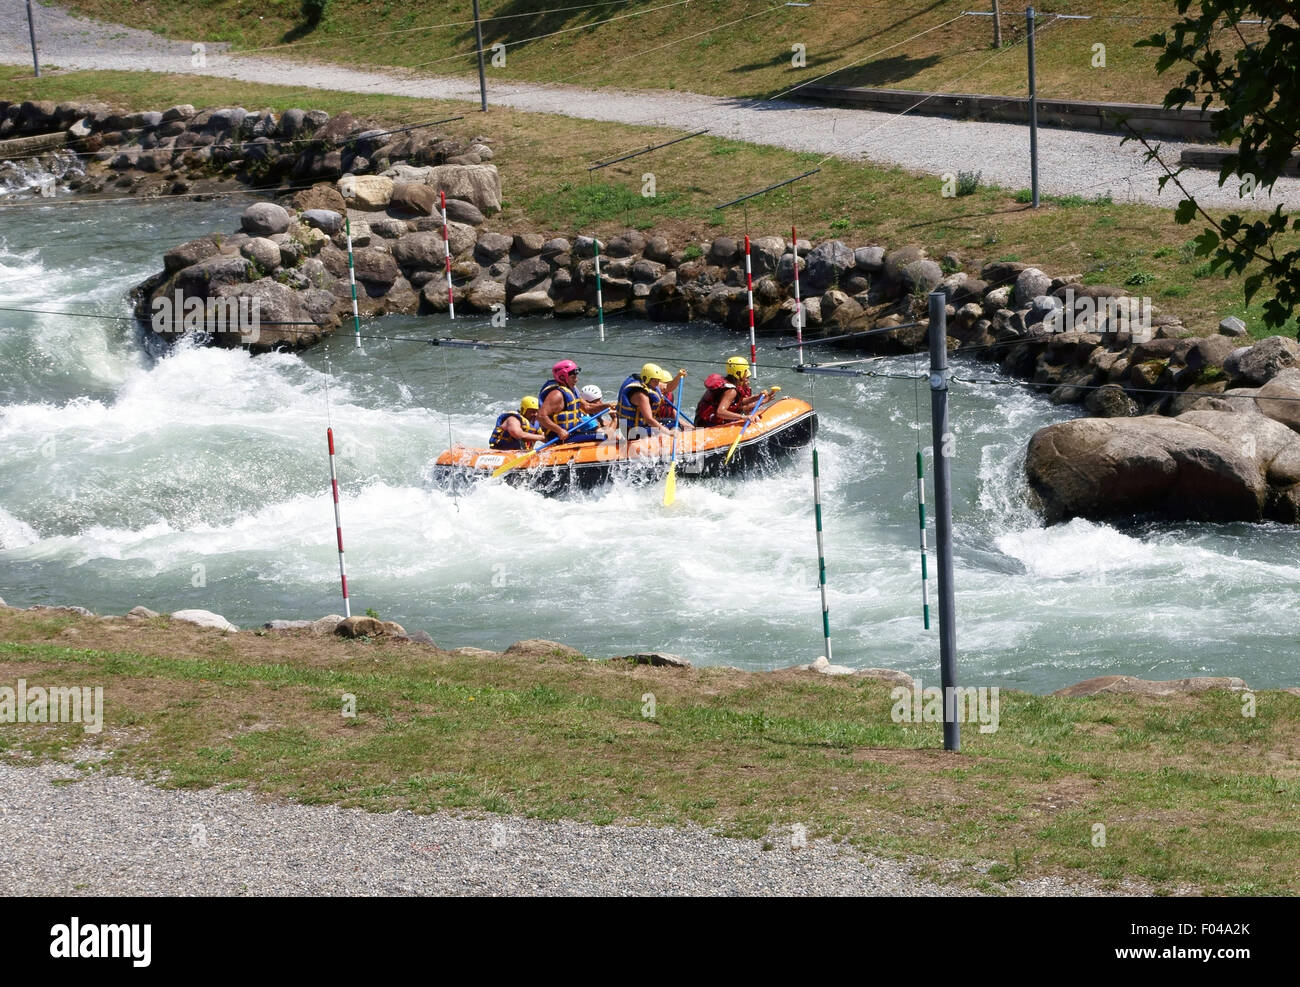 Vigas de agua blanca en el curso de slalom artificial en Pau, Francia Foto de stock